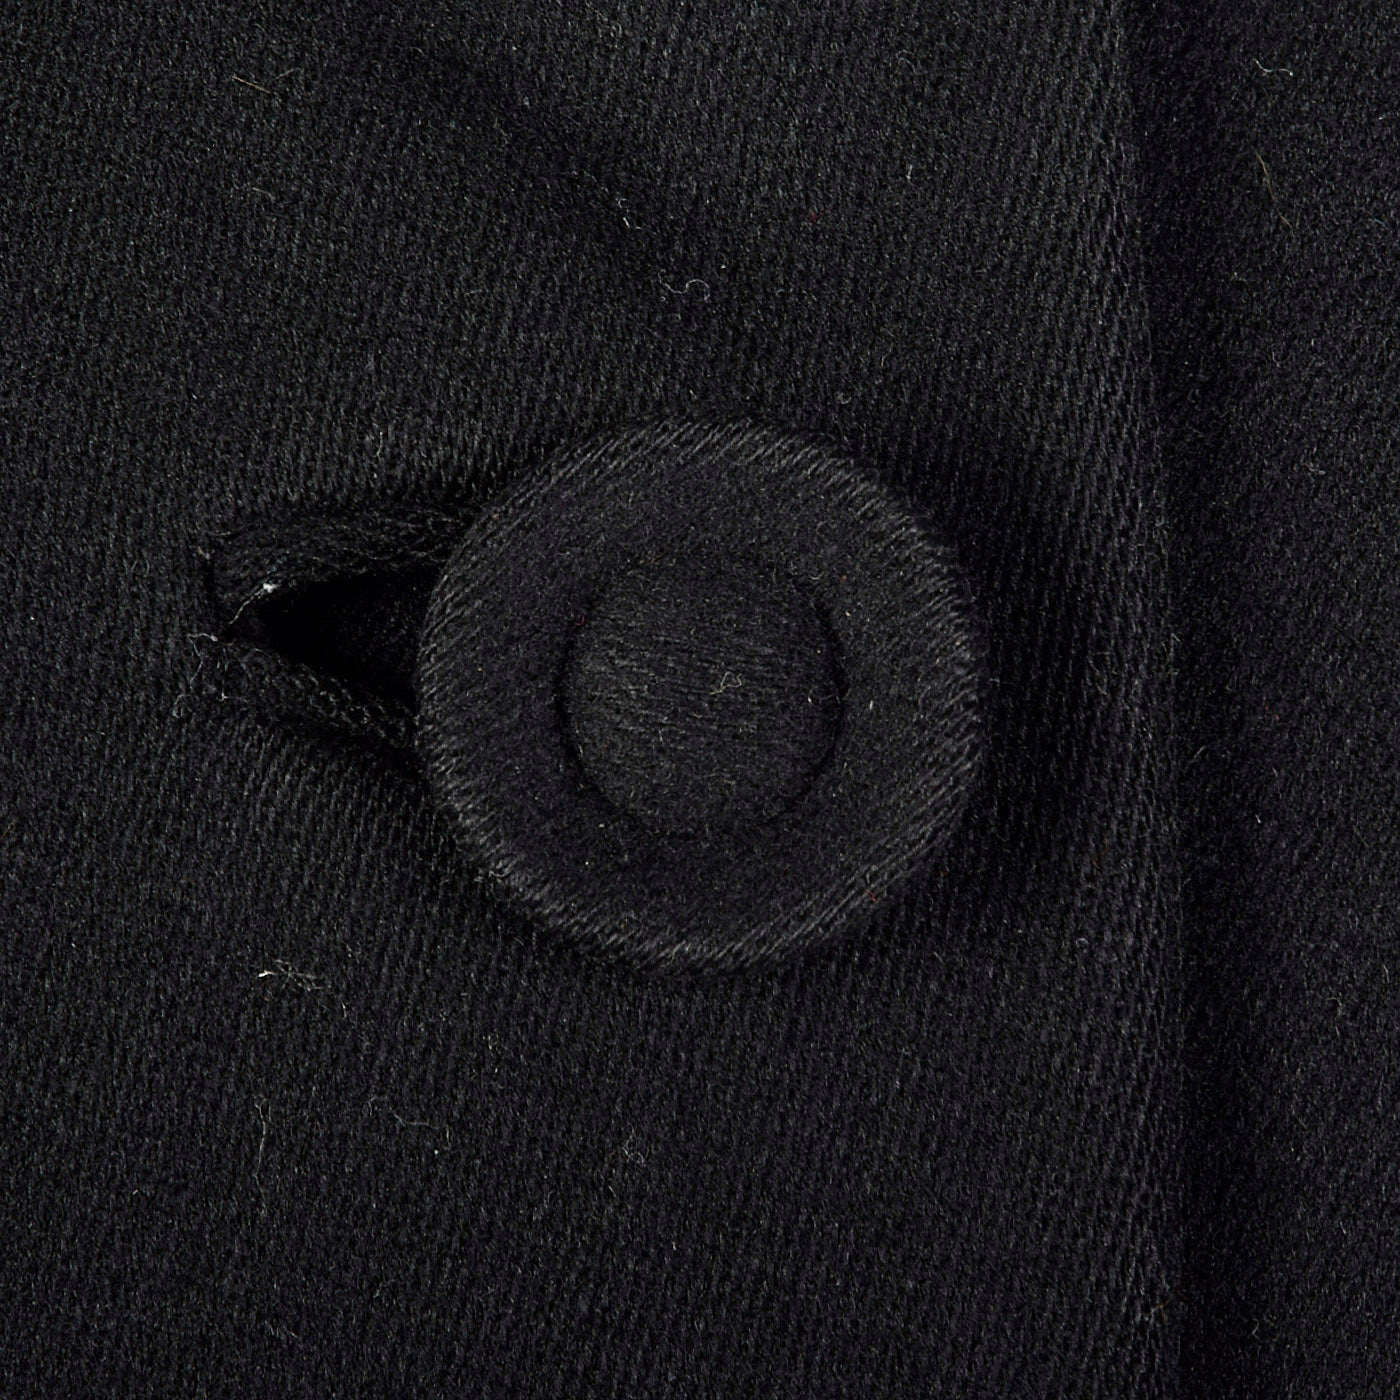 1940s Classic Black Princess Coat